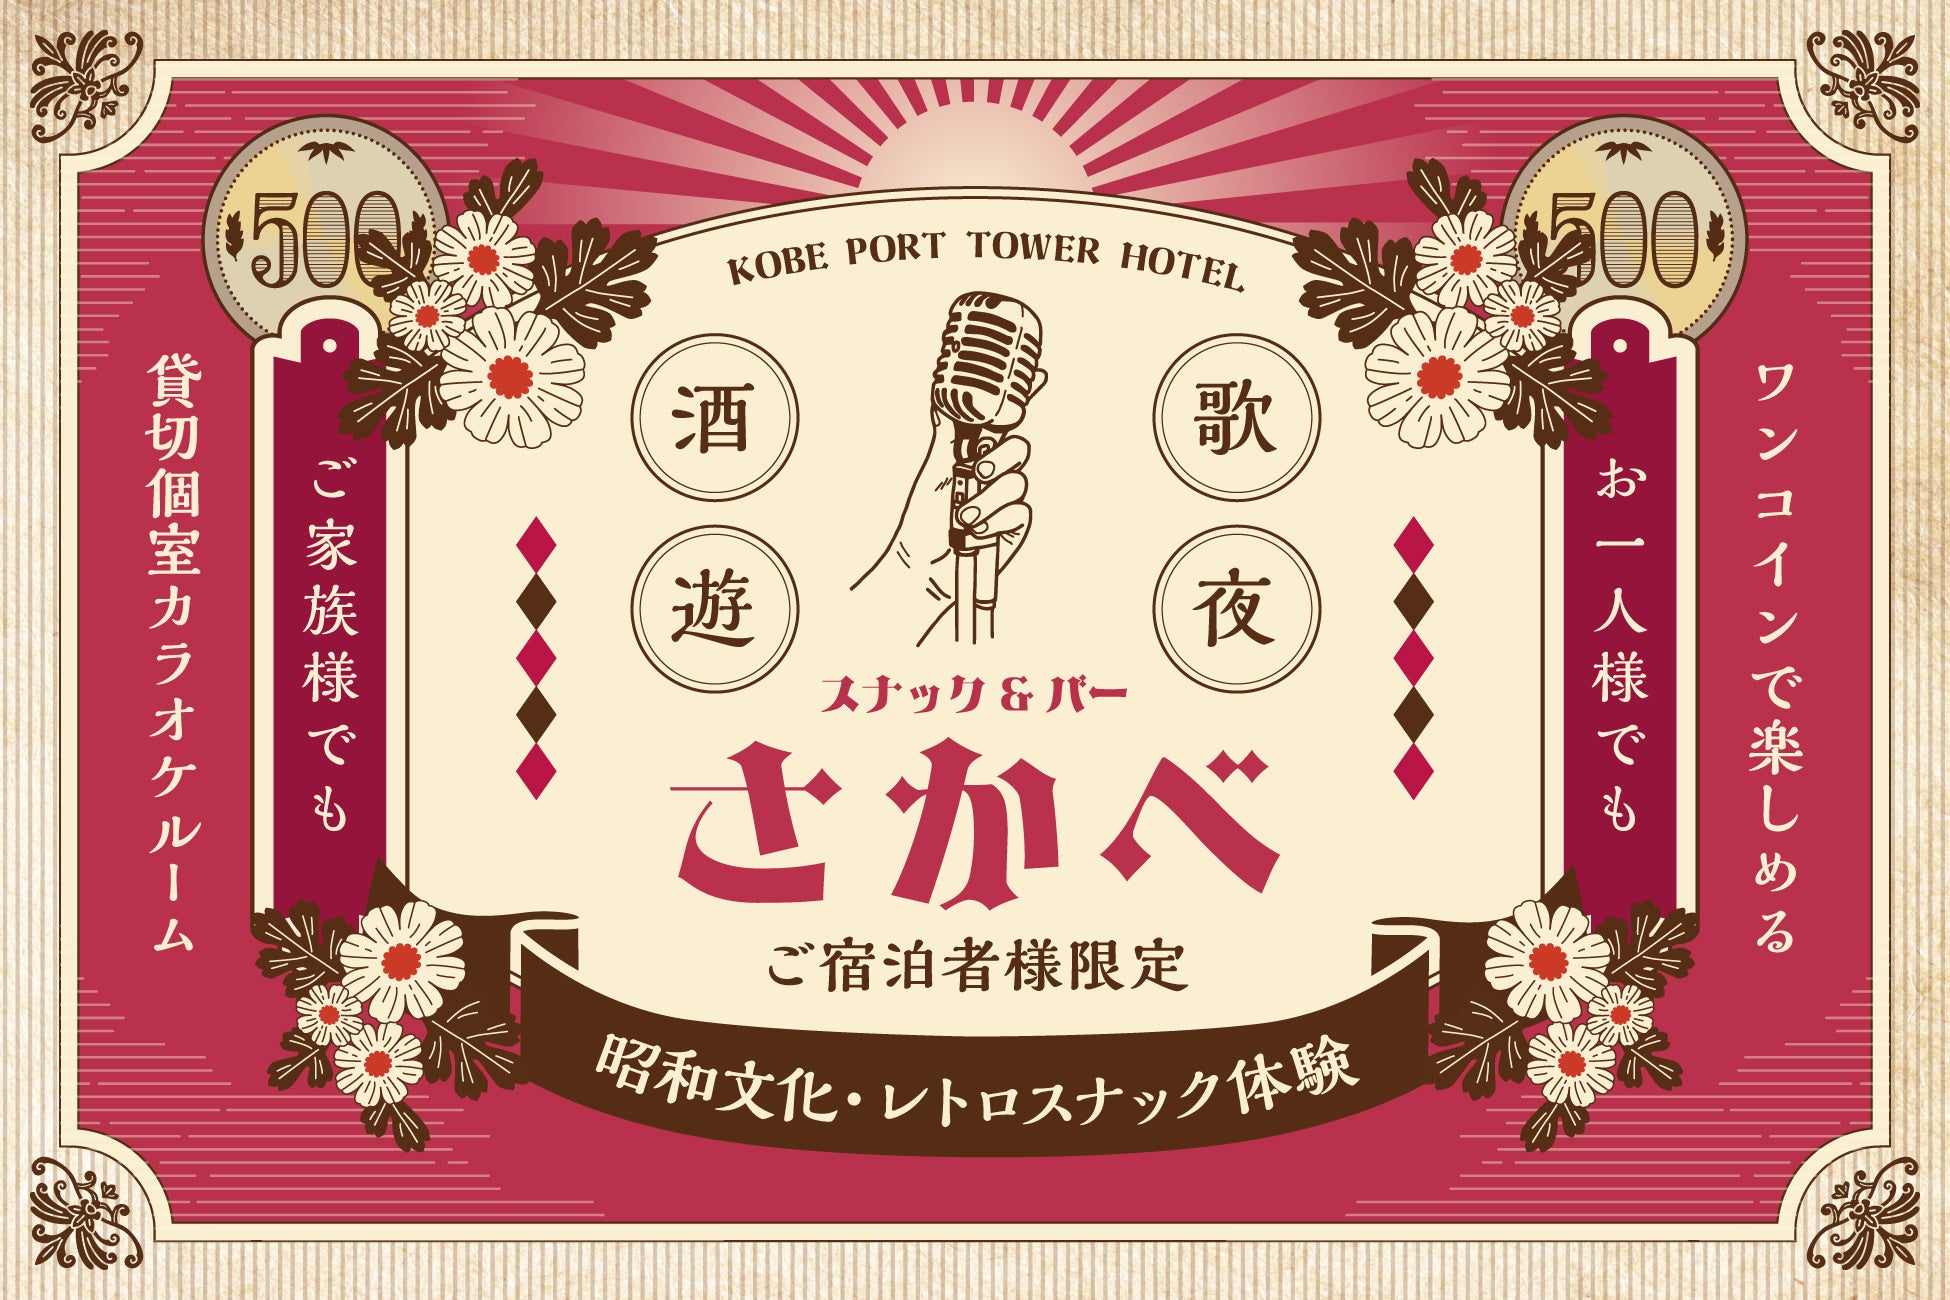 【神戸ポートタワーホテル】宿泊者とのエンゲージメントを深める新スポット昭和レトロな「スナック＆バーさかべ」をオープン